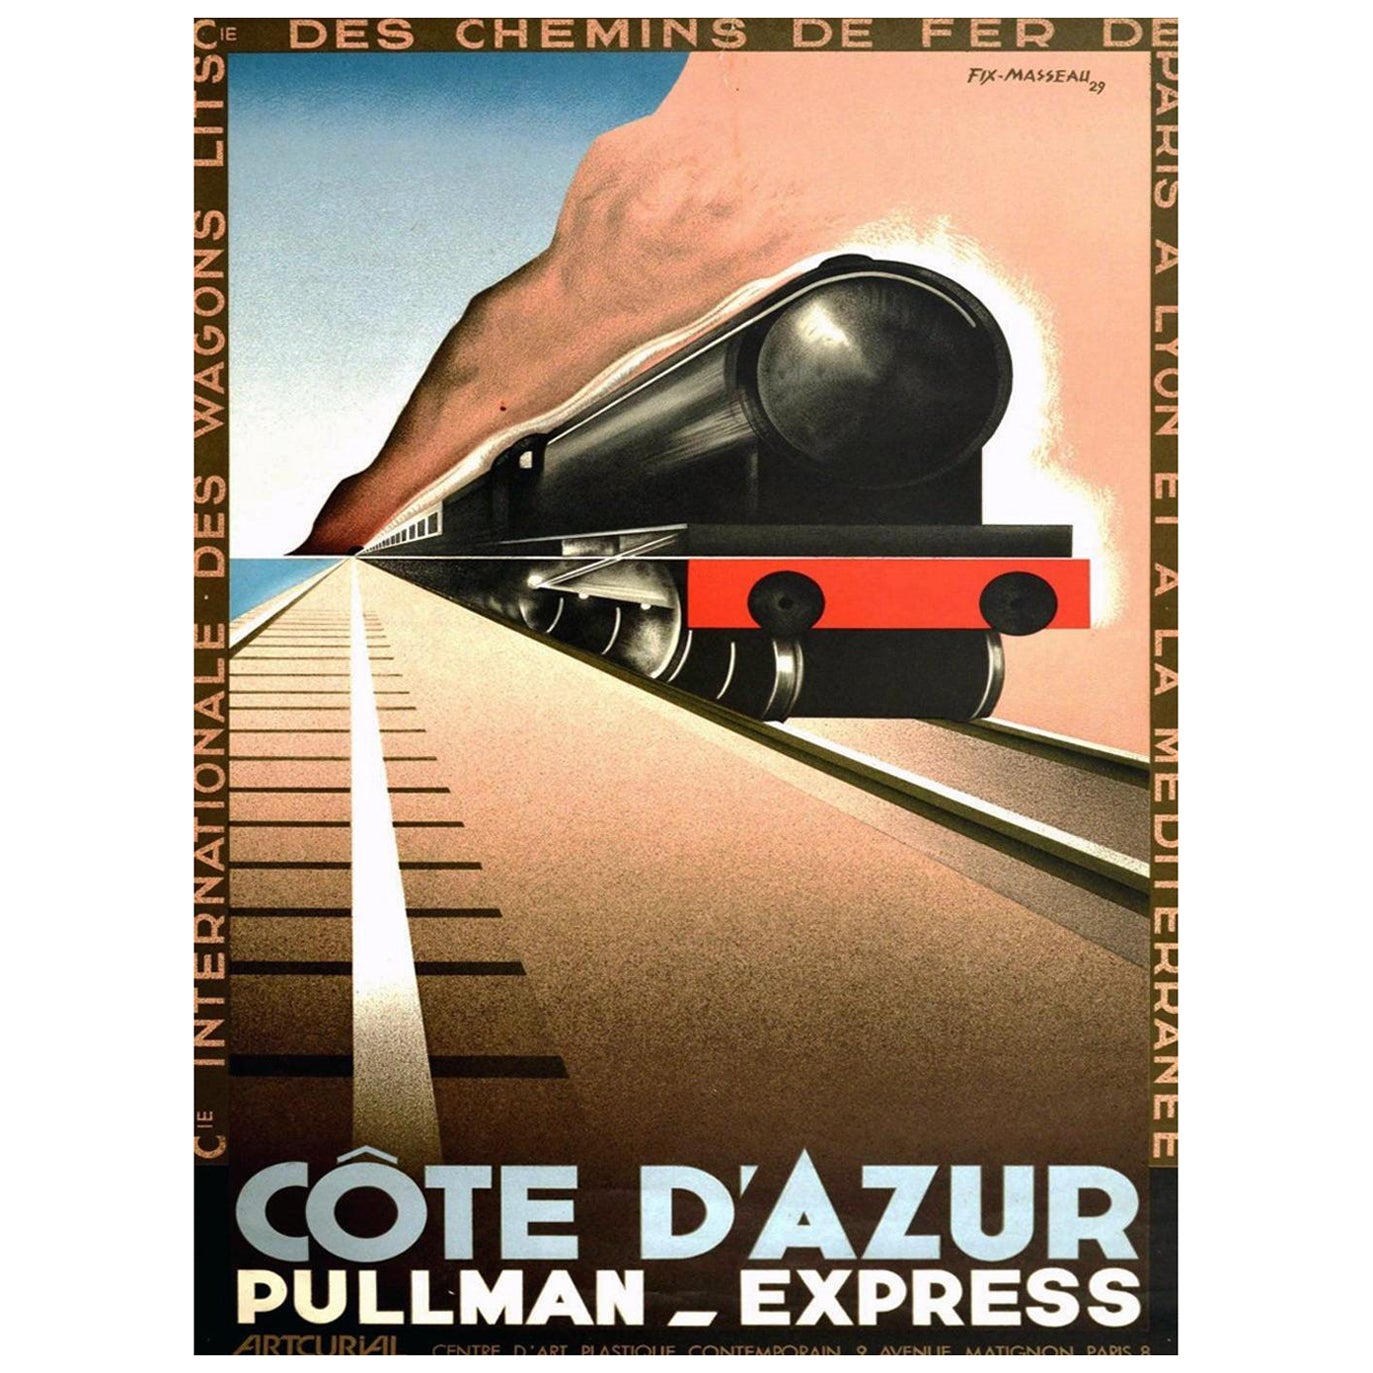 1982 Cote d'Azur - Pullman Express - Fix-Masseau Original Vintage Poster For Sale